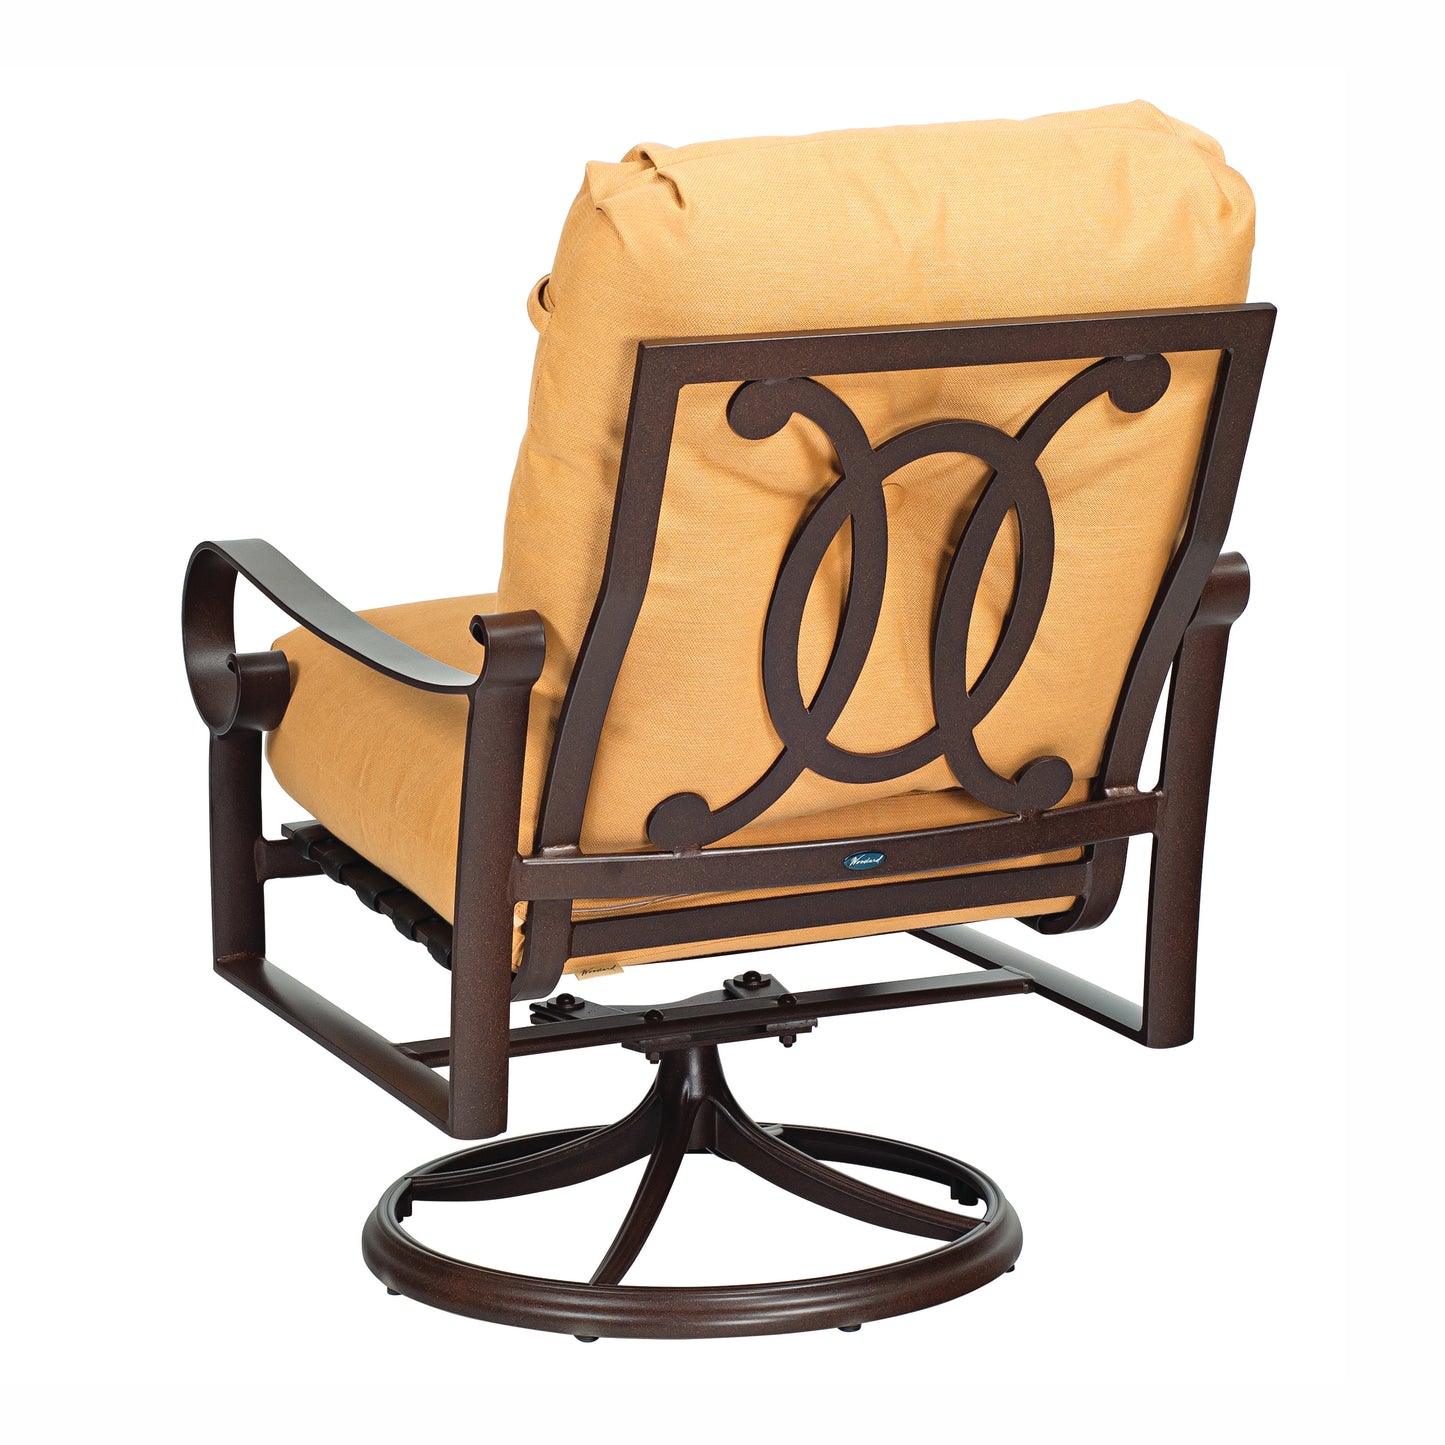 Woodard Belden Cushion Swivel Rocking Lounge Chair 690477M - Textured Black / Canvas Heather Beige